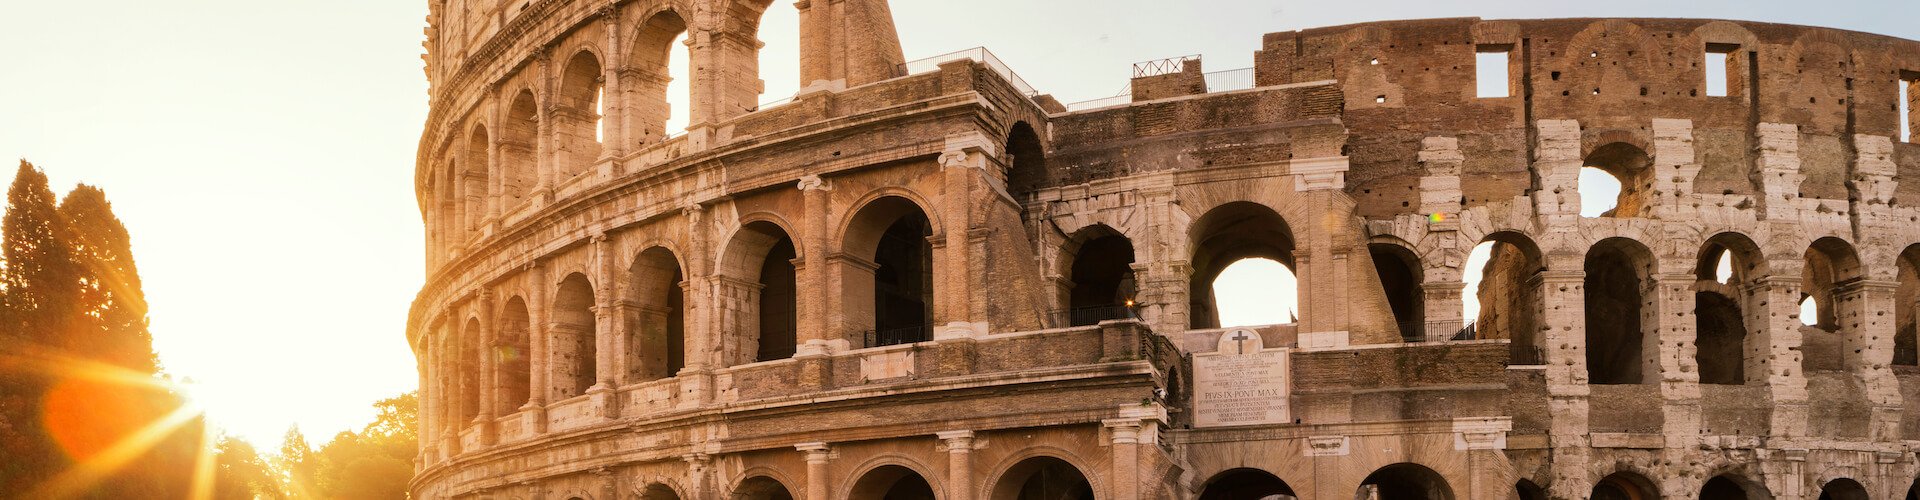 Ausflugsziel Kolosseum & Forum Romanum